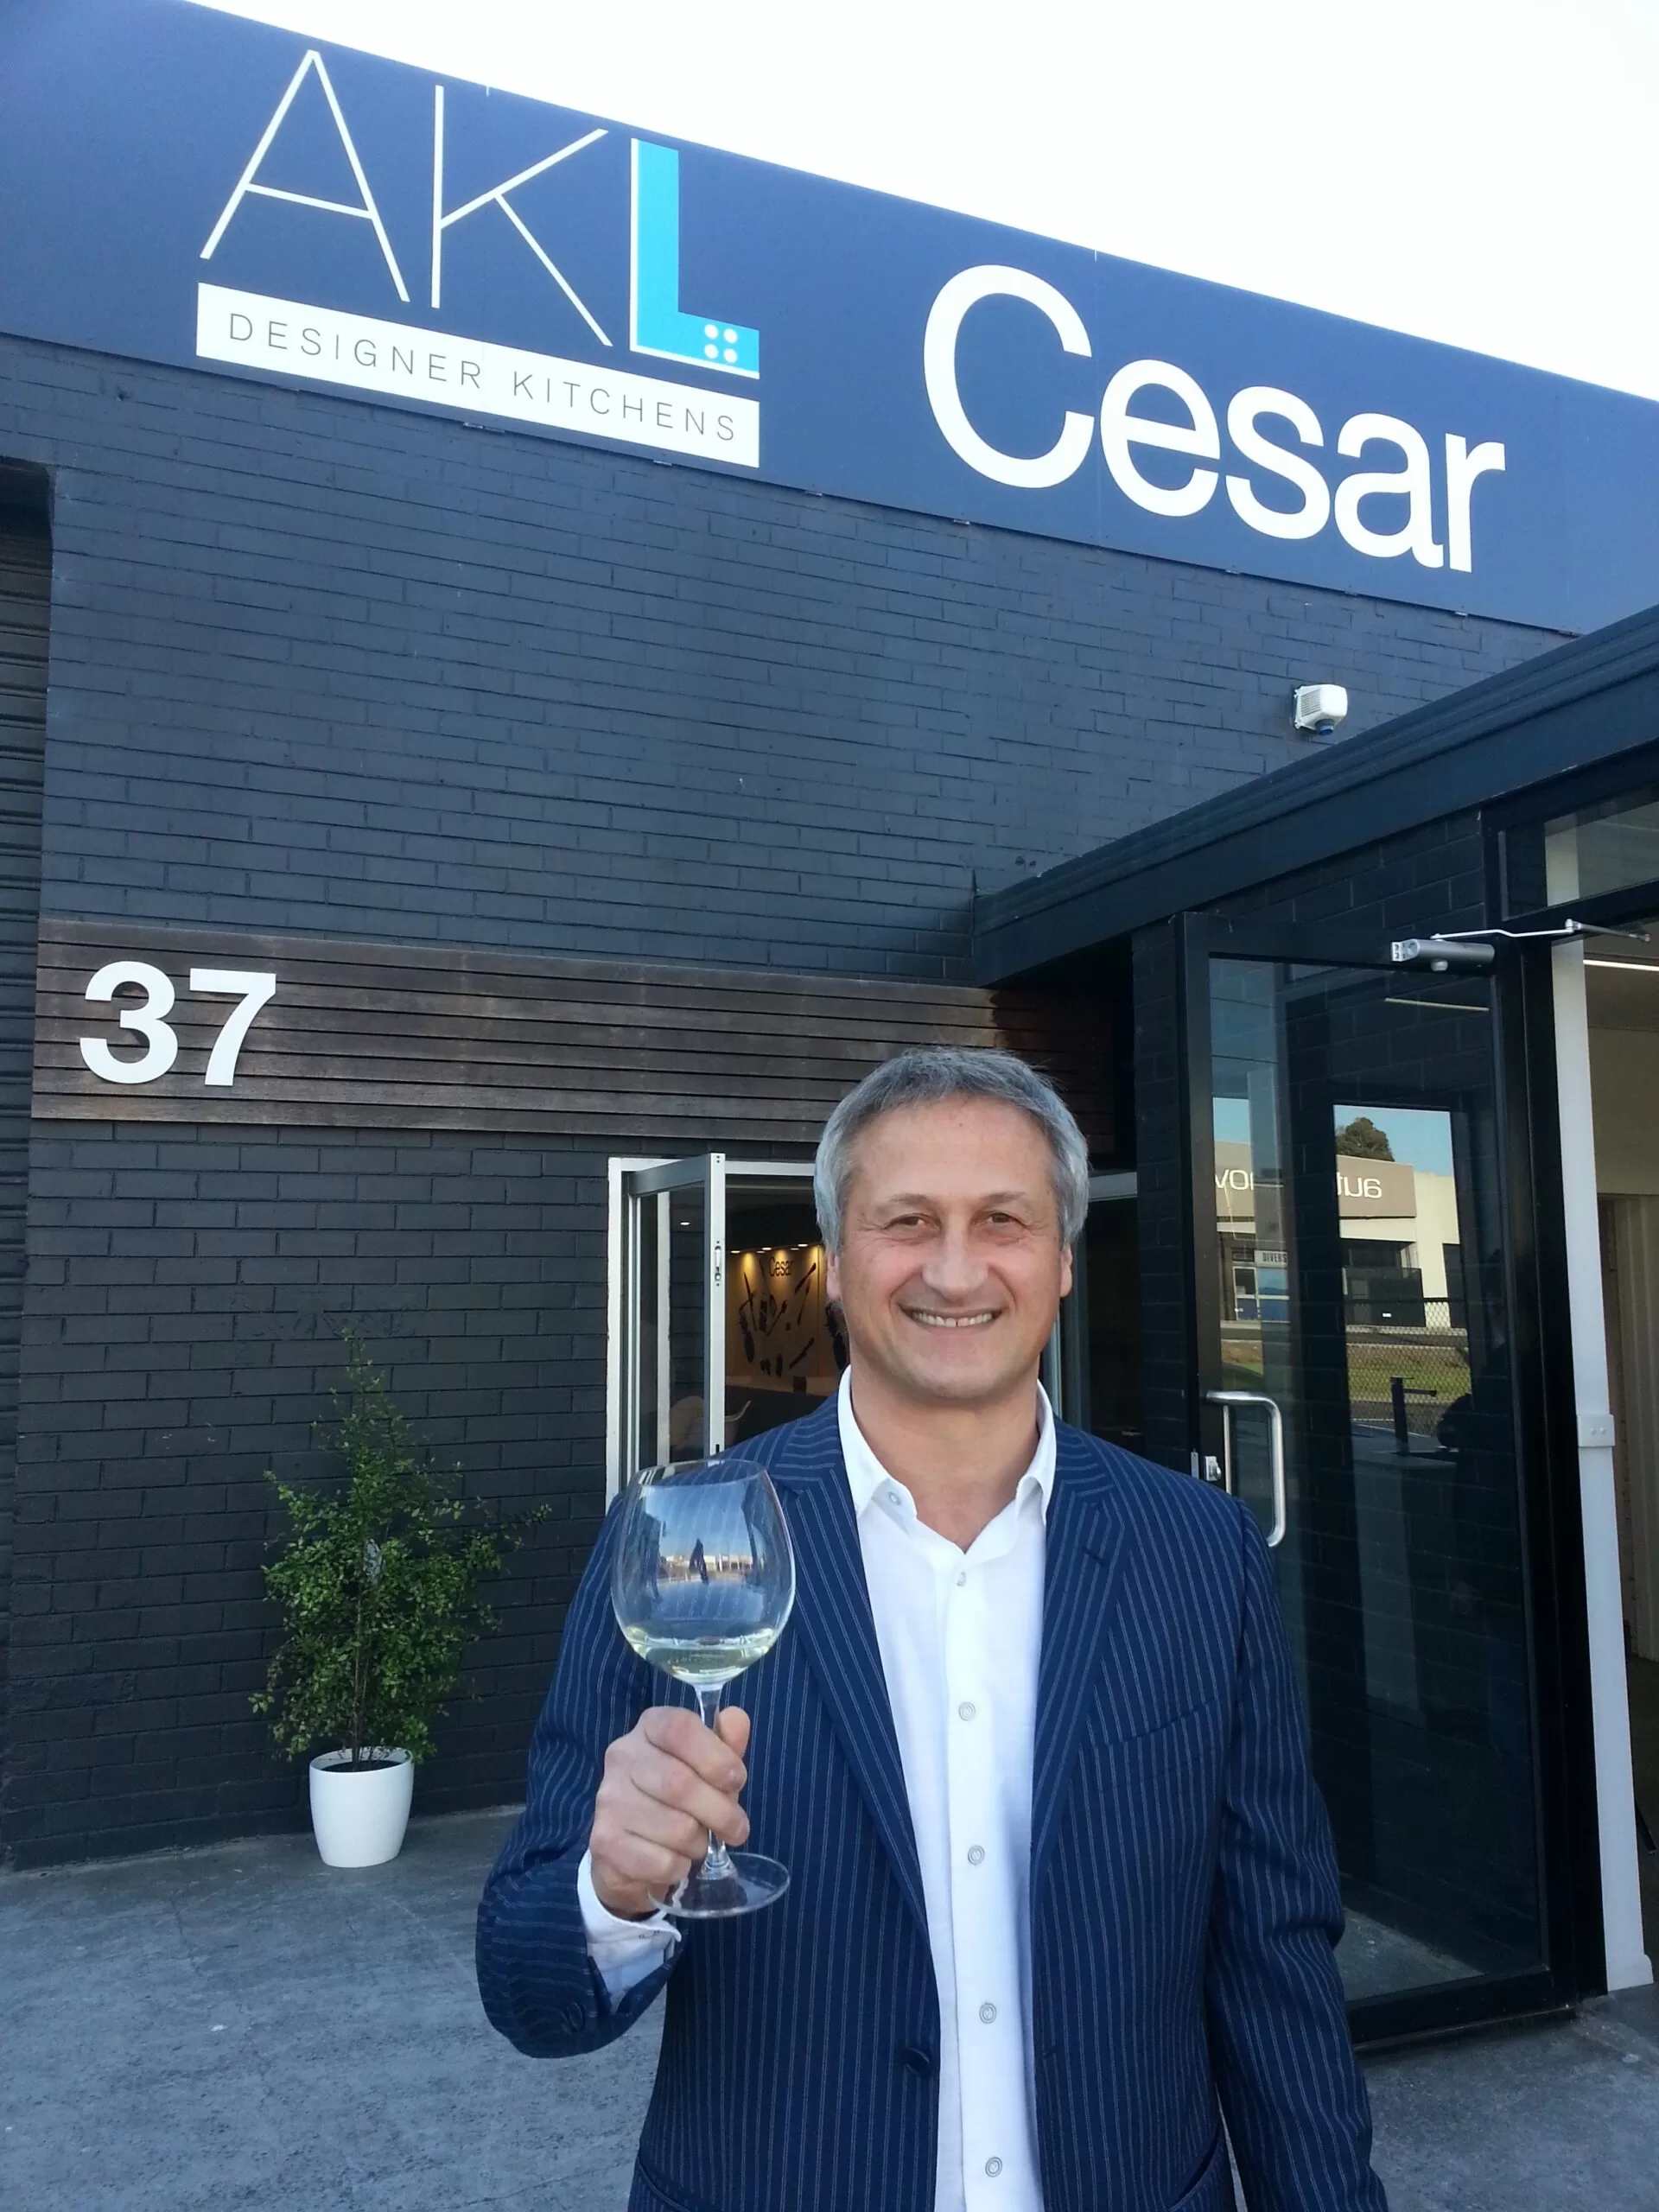 Cesar President, Dante Cester outsider the new AKL showroom